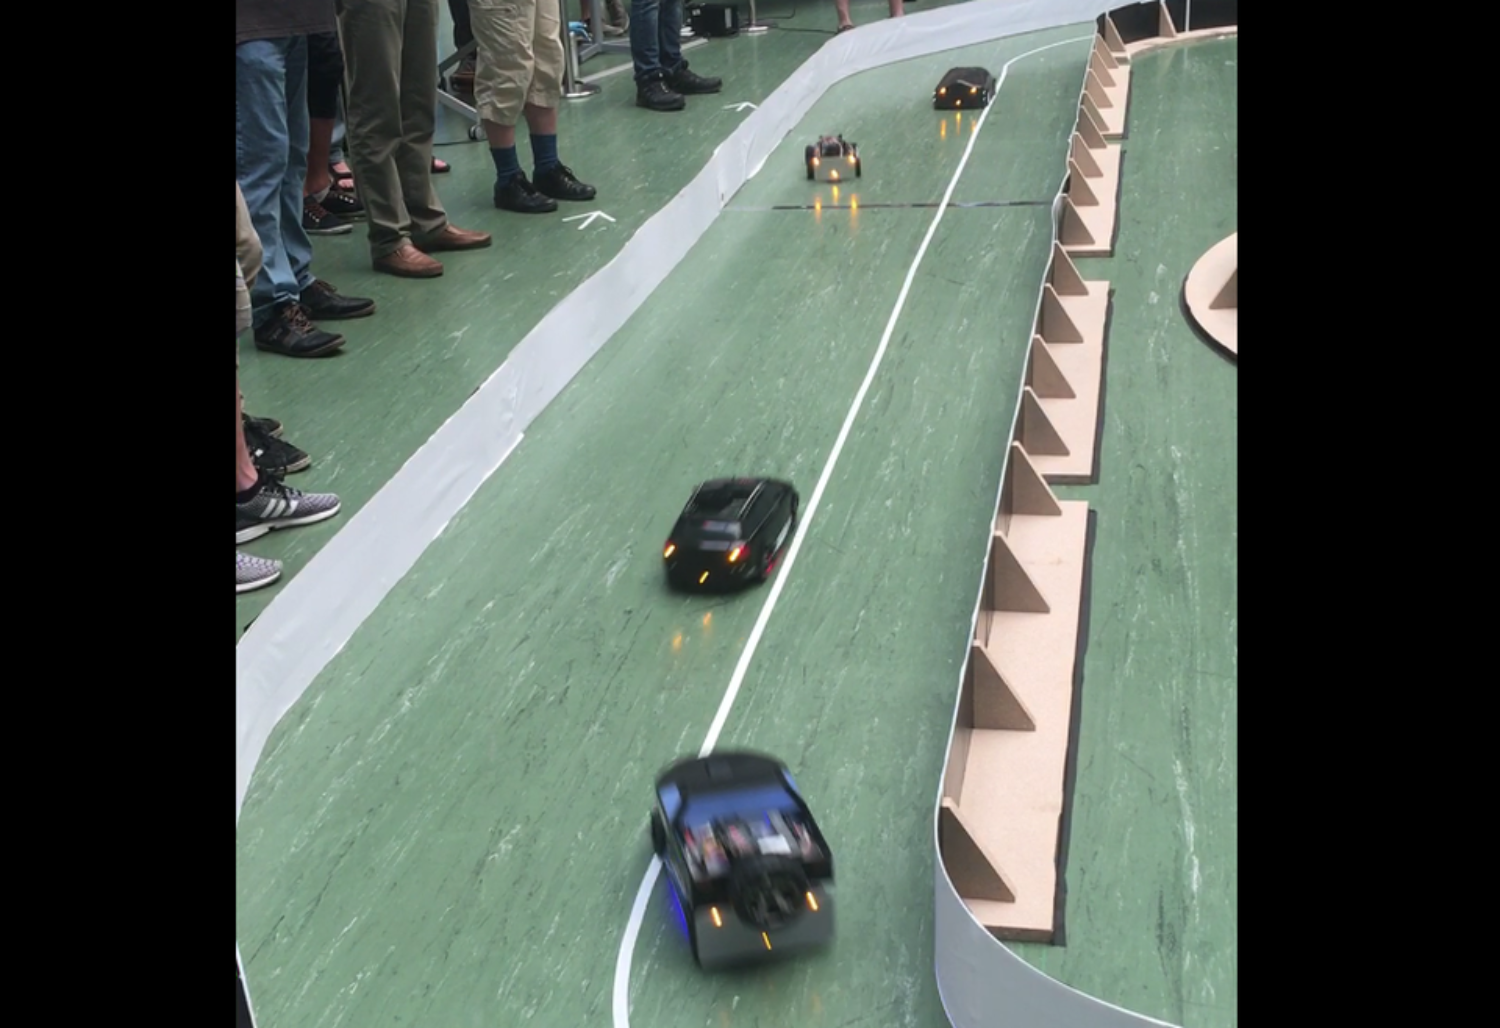 AUTEXIS investiert in die Zukunft - Sponsoring Wettbewerb FHNW "autonom Fahrende Fahrzeuge"